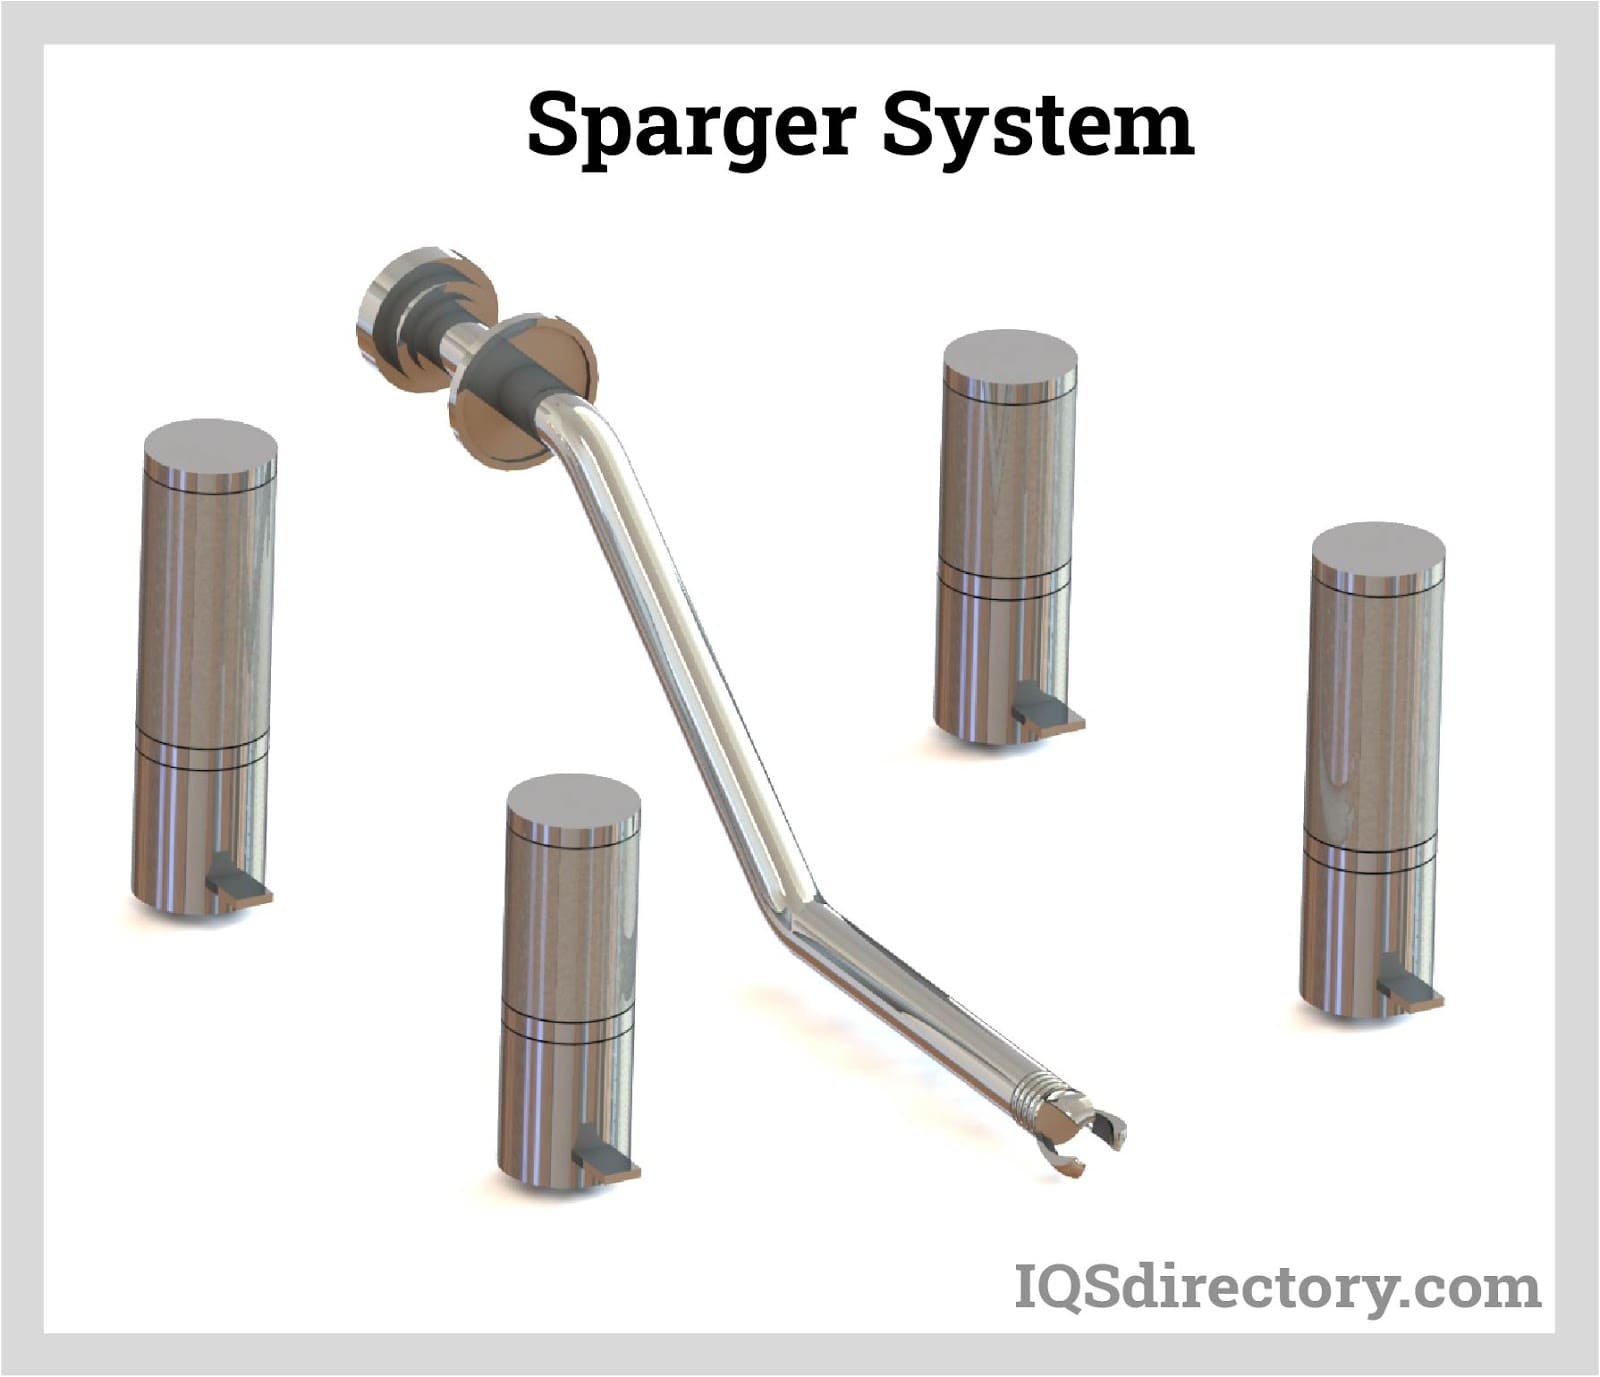 Sparger System